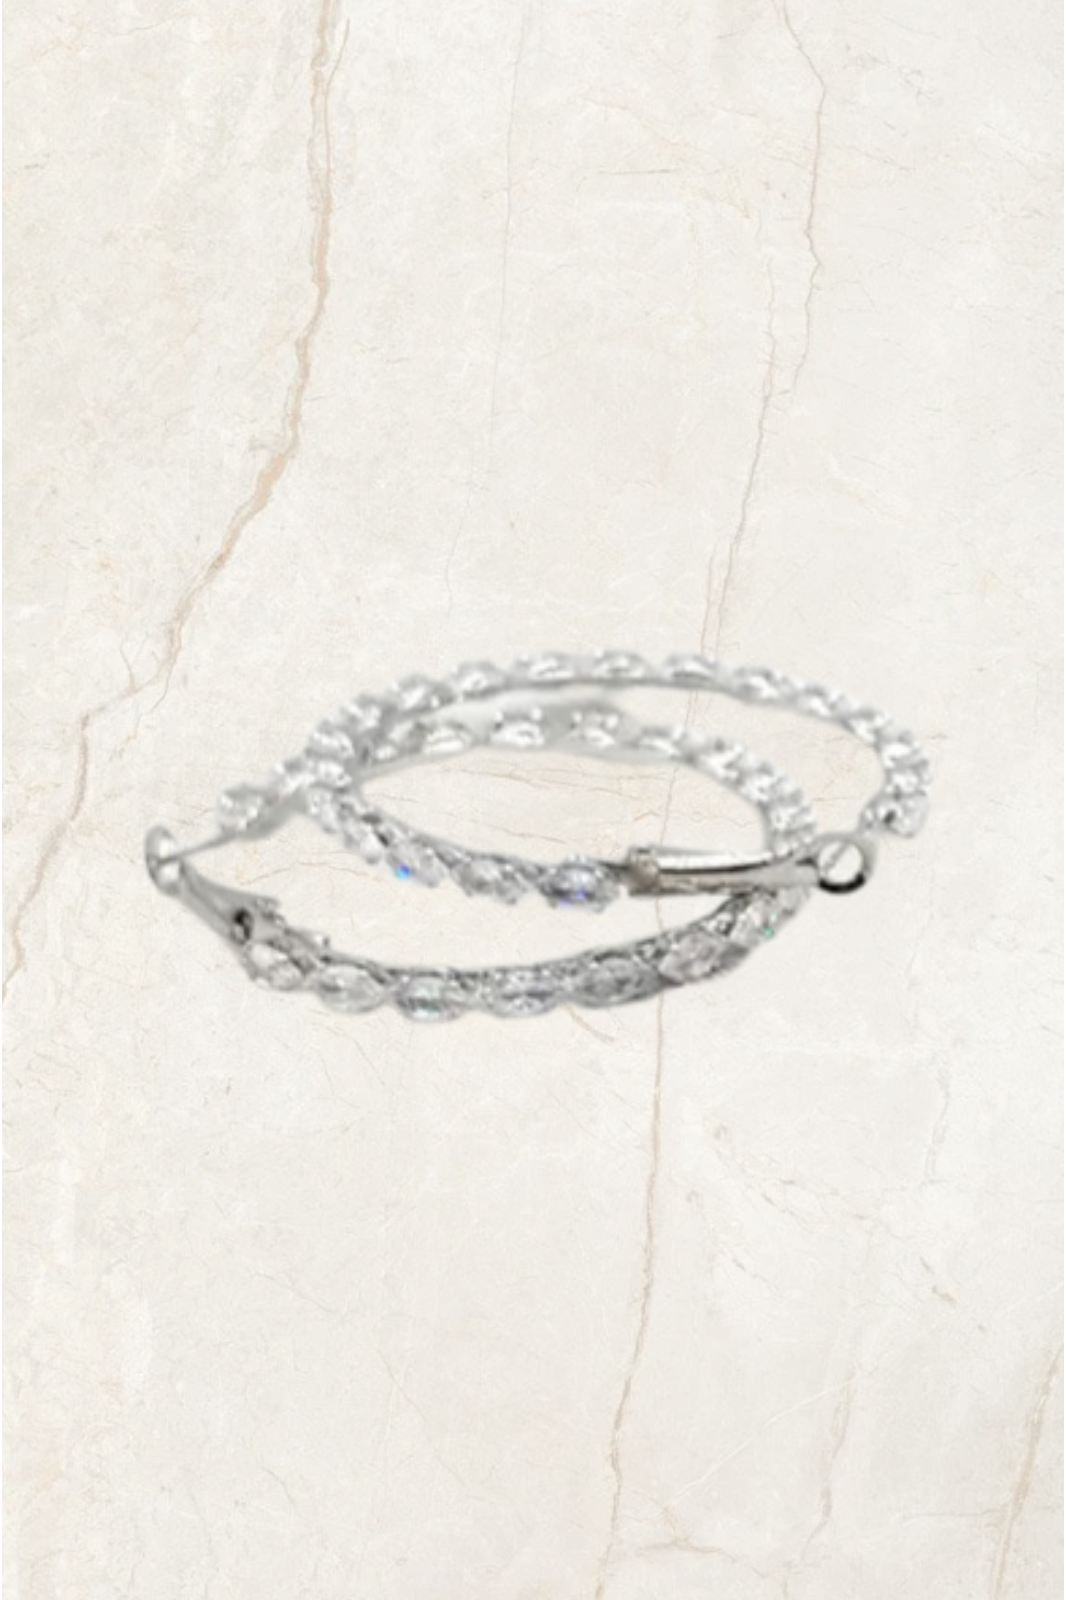 Chrysalini Jewellery Marquise CZ Hoops Earrings in Silver